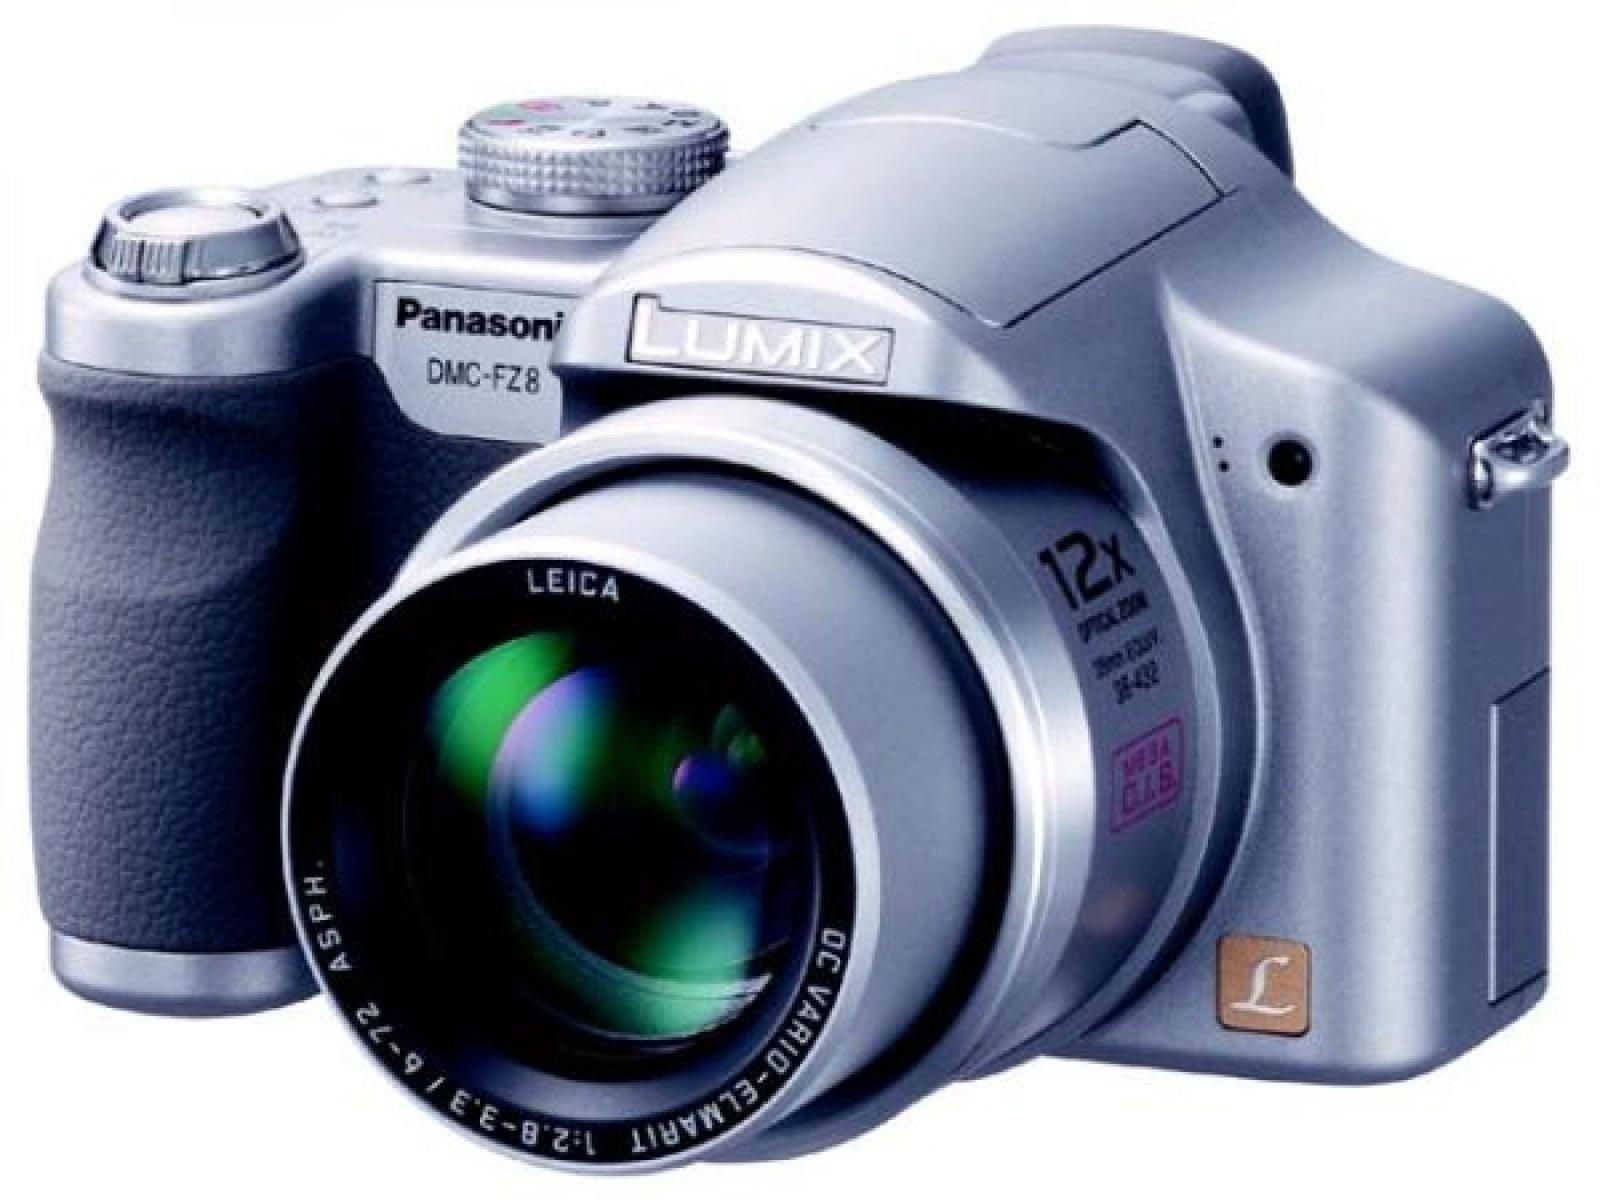 Digitálny fotoaparát Panasonic Lumix DMC-FZ8, strieborný, plne funkčný - Foto